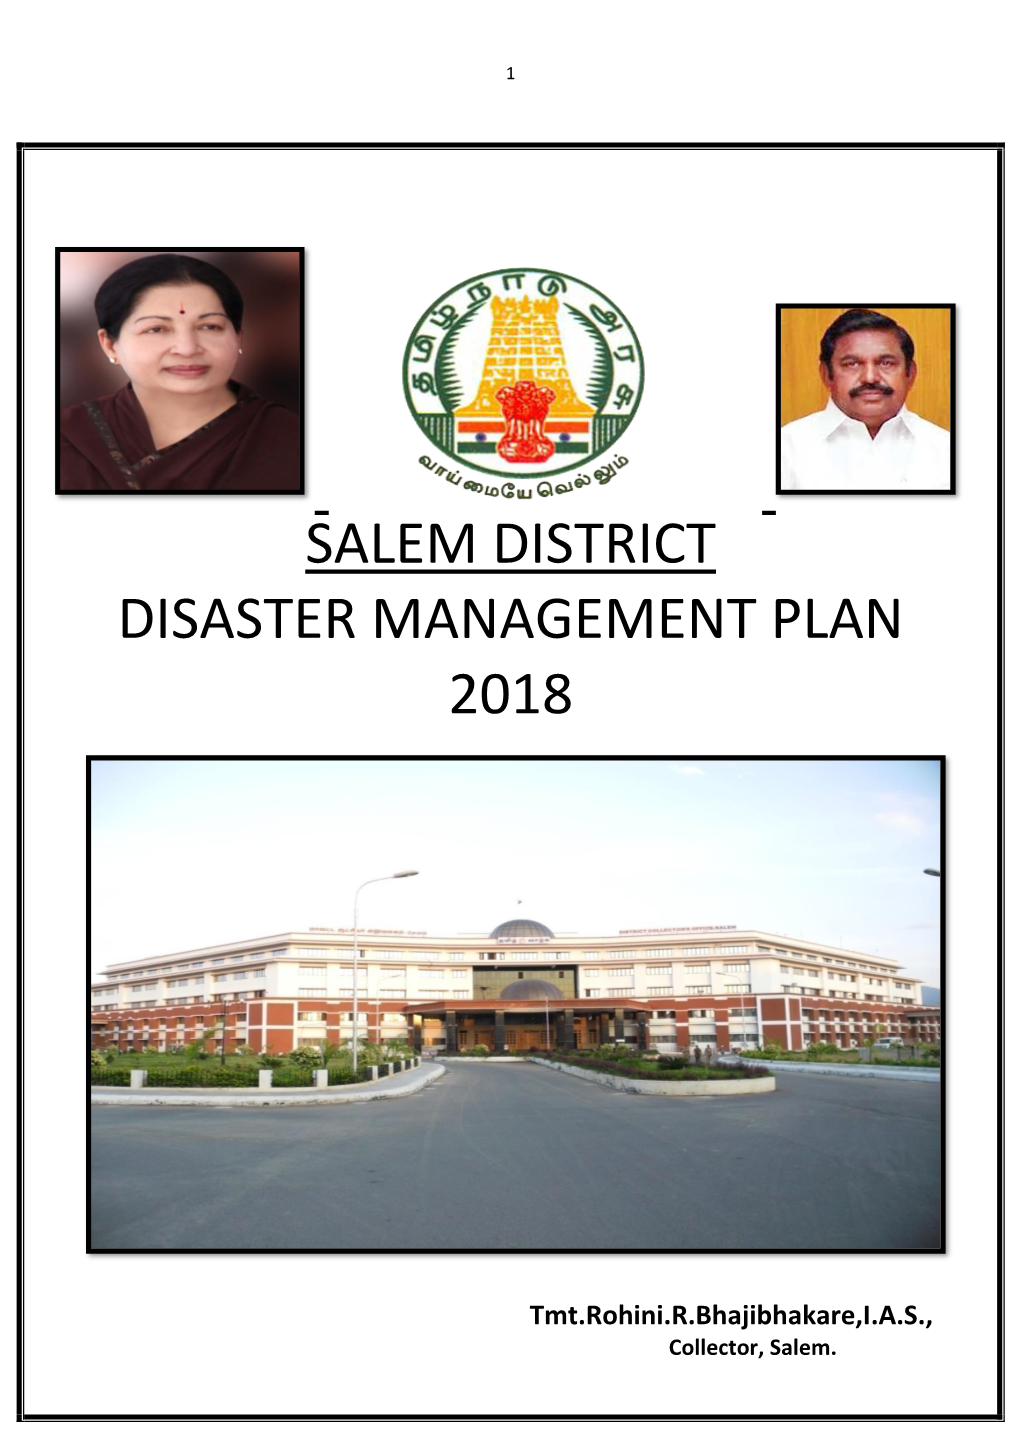 Salem District Disaster Management Plan 2018